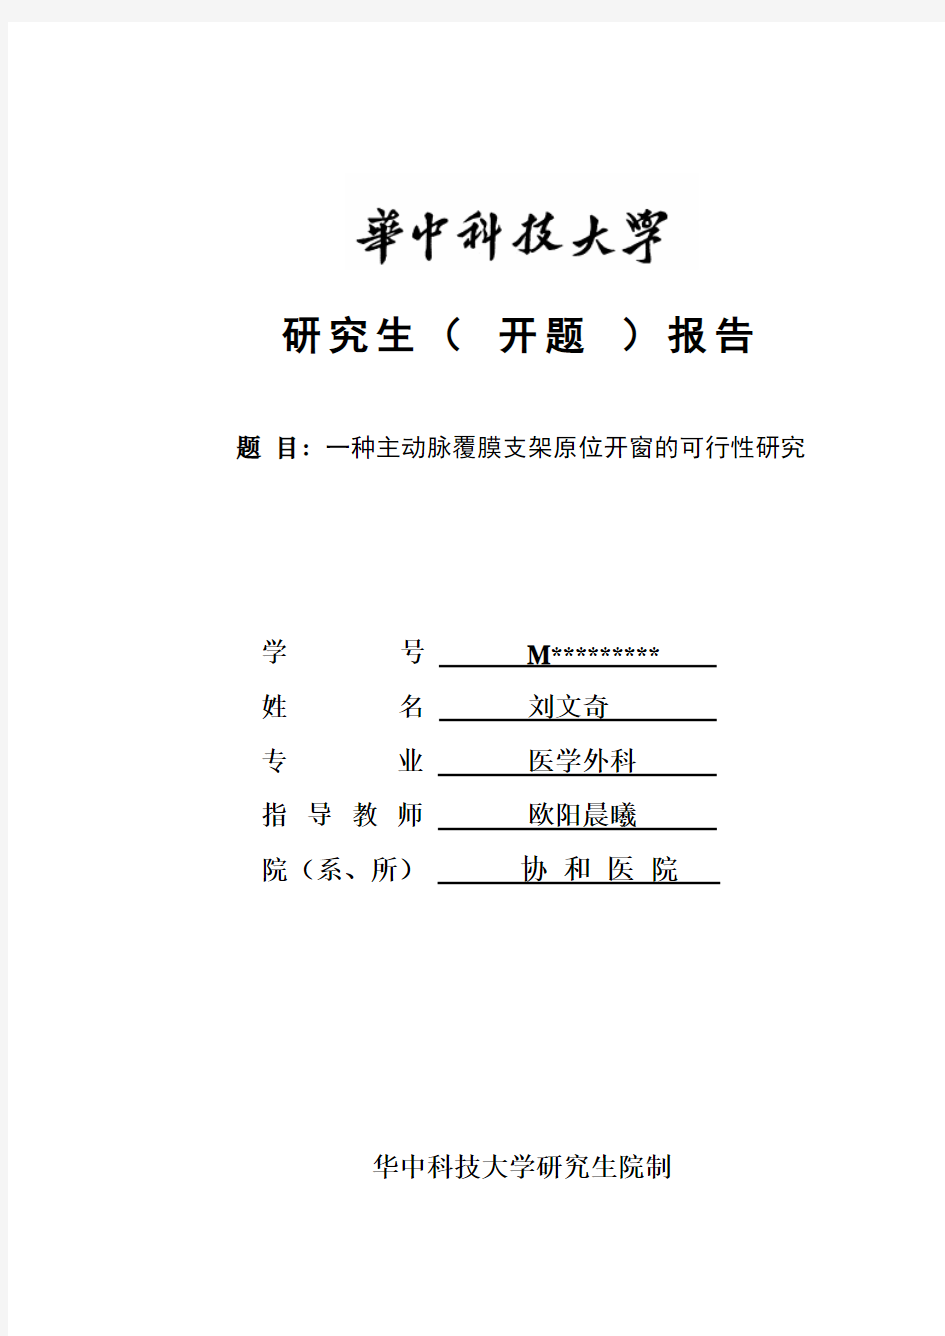 14《华中科技大学研究生课题设计、开题报告》 (1)